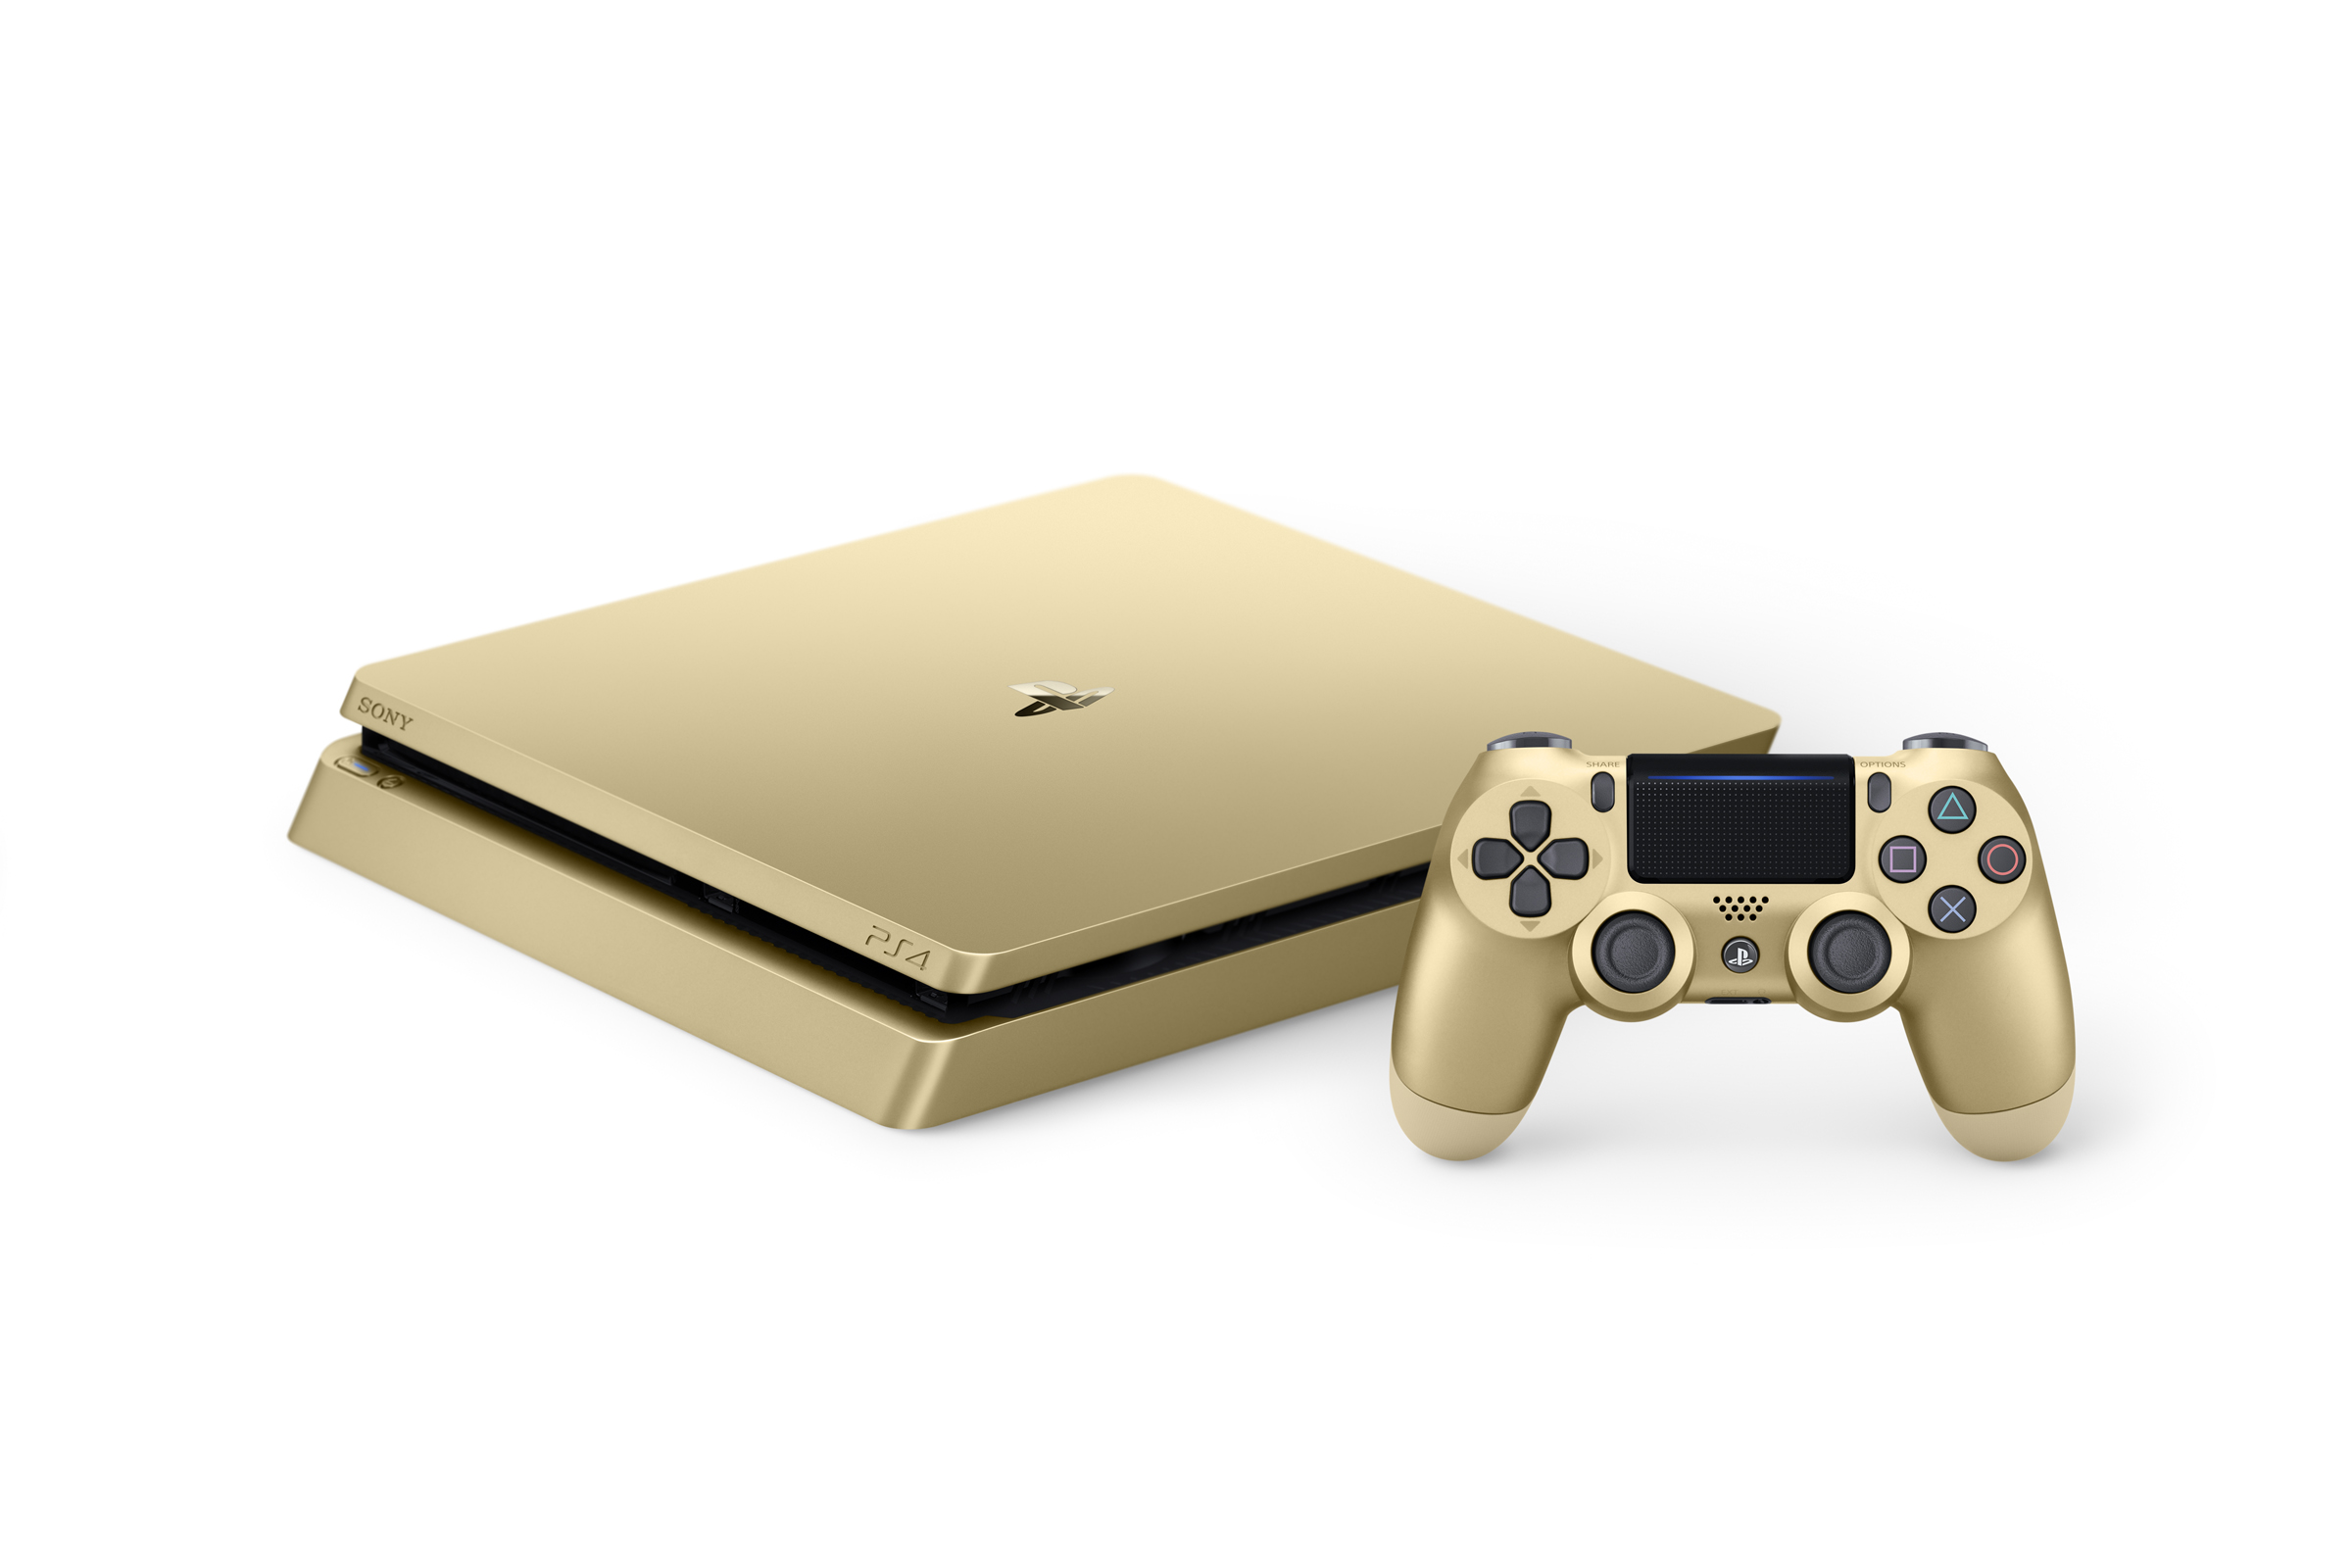 La Playstation 4 Slim Gold et Silver annoncée (5)